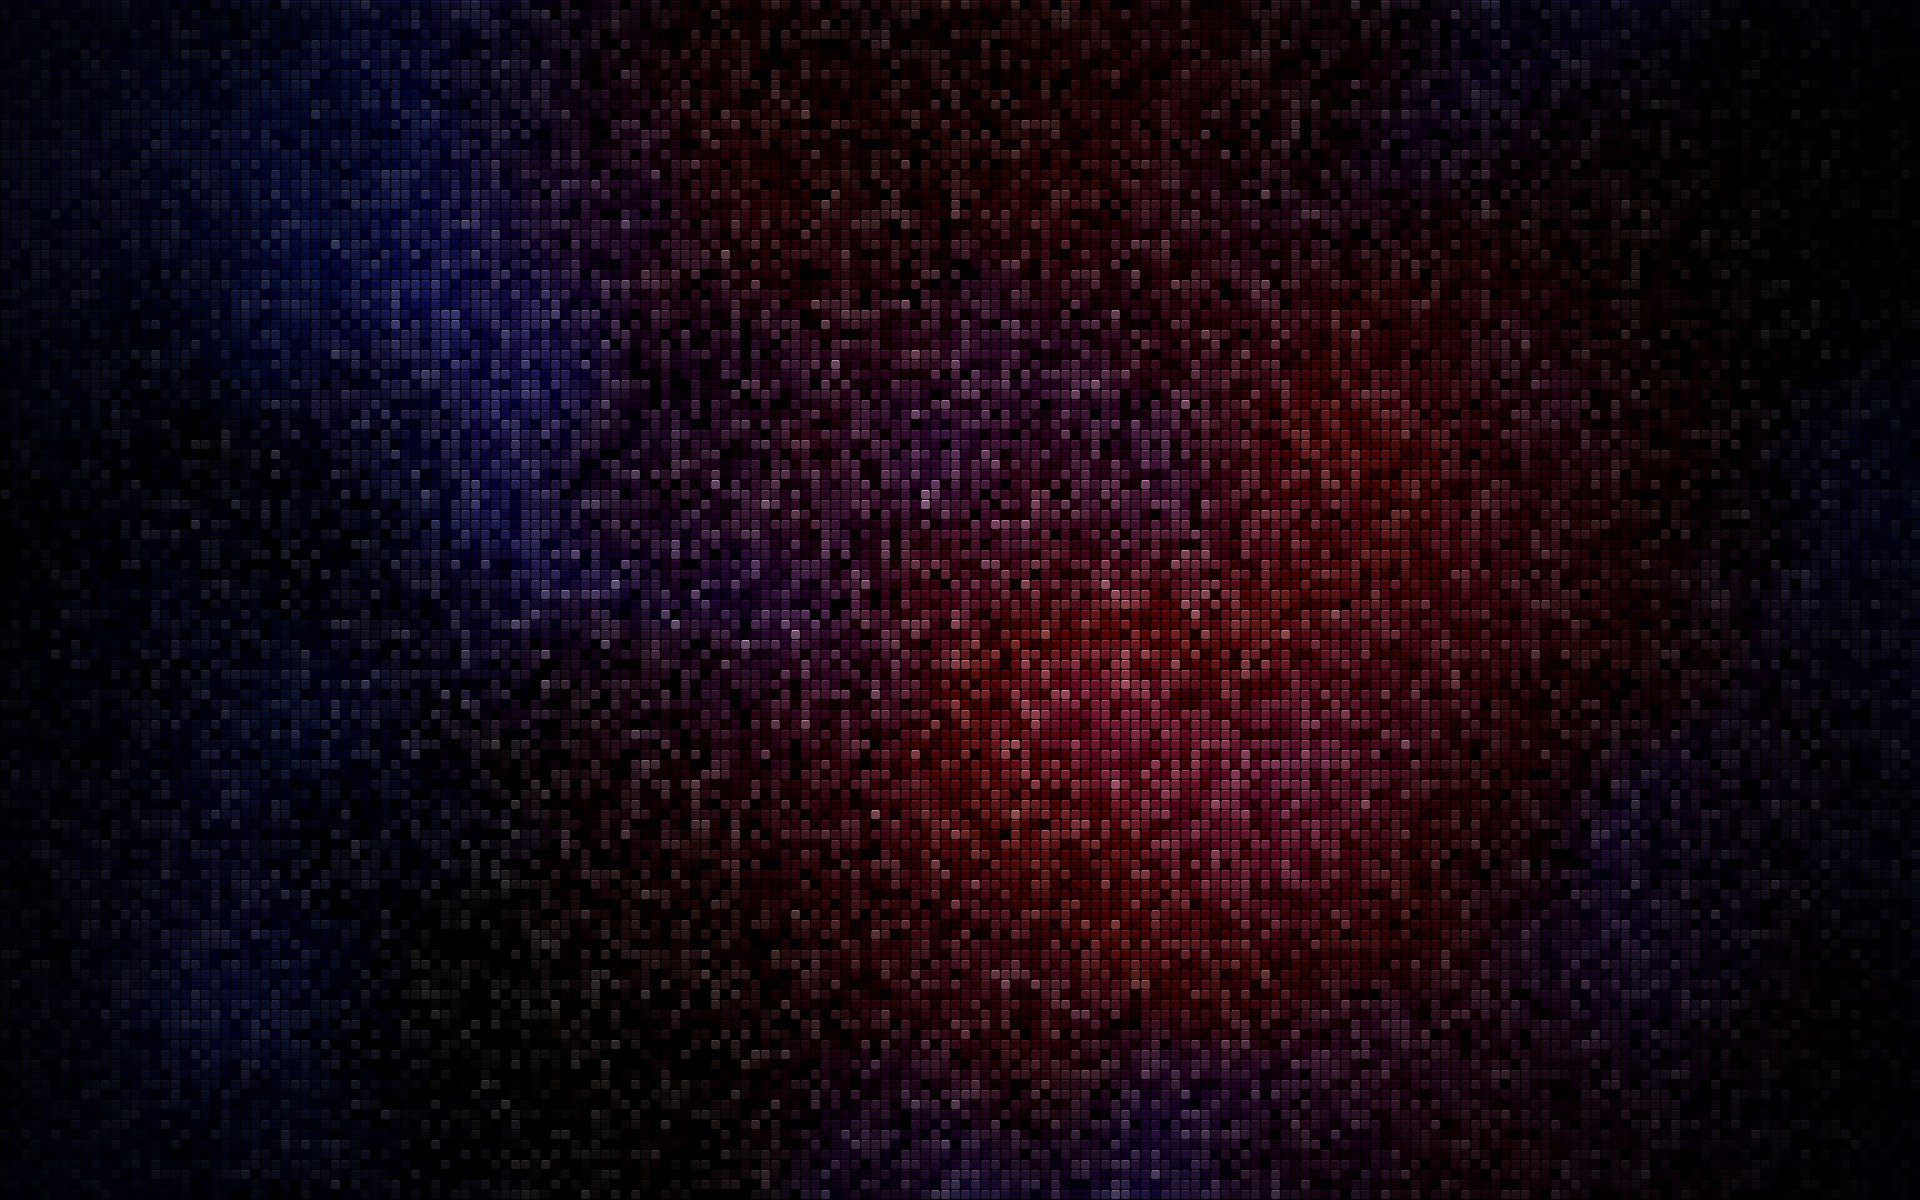 Retro 8 bit pixelart wallpapers 19